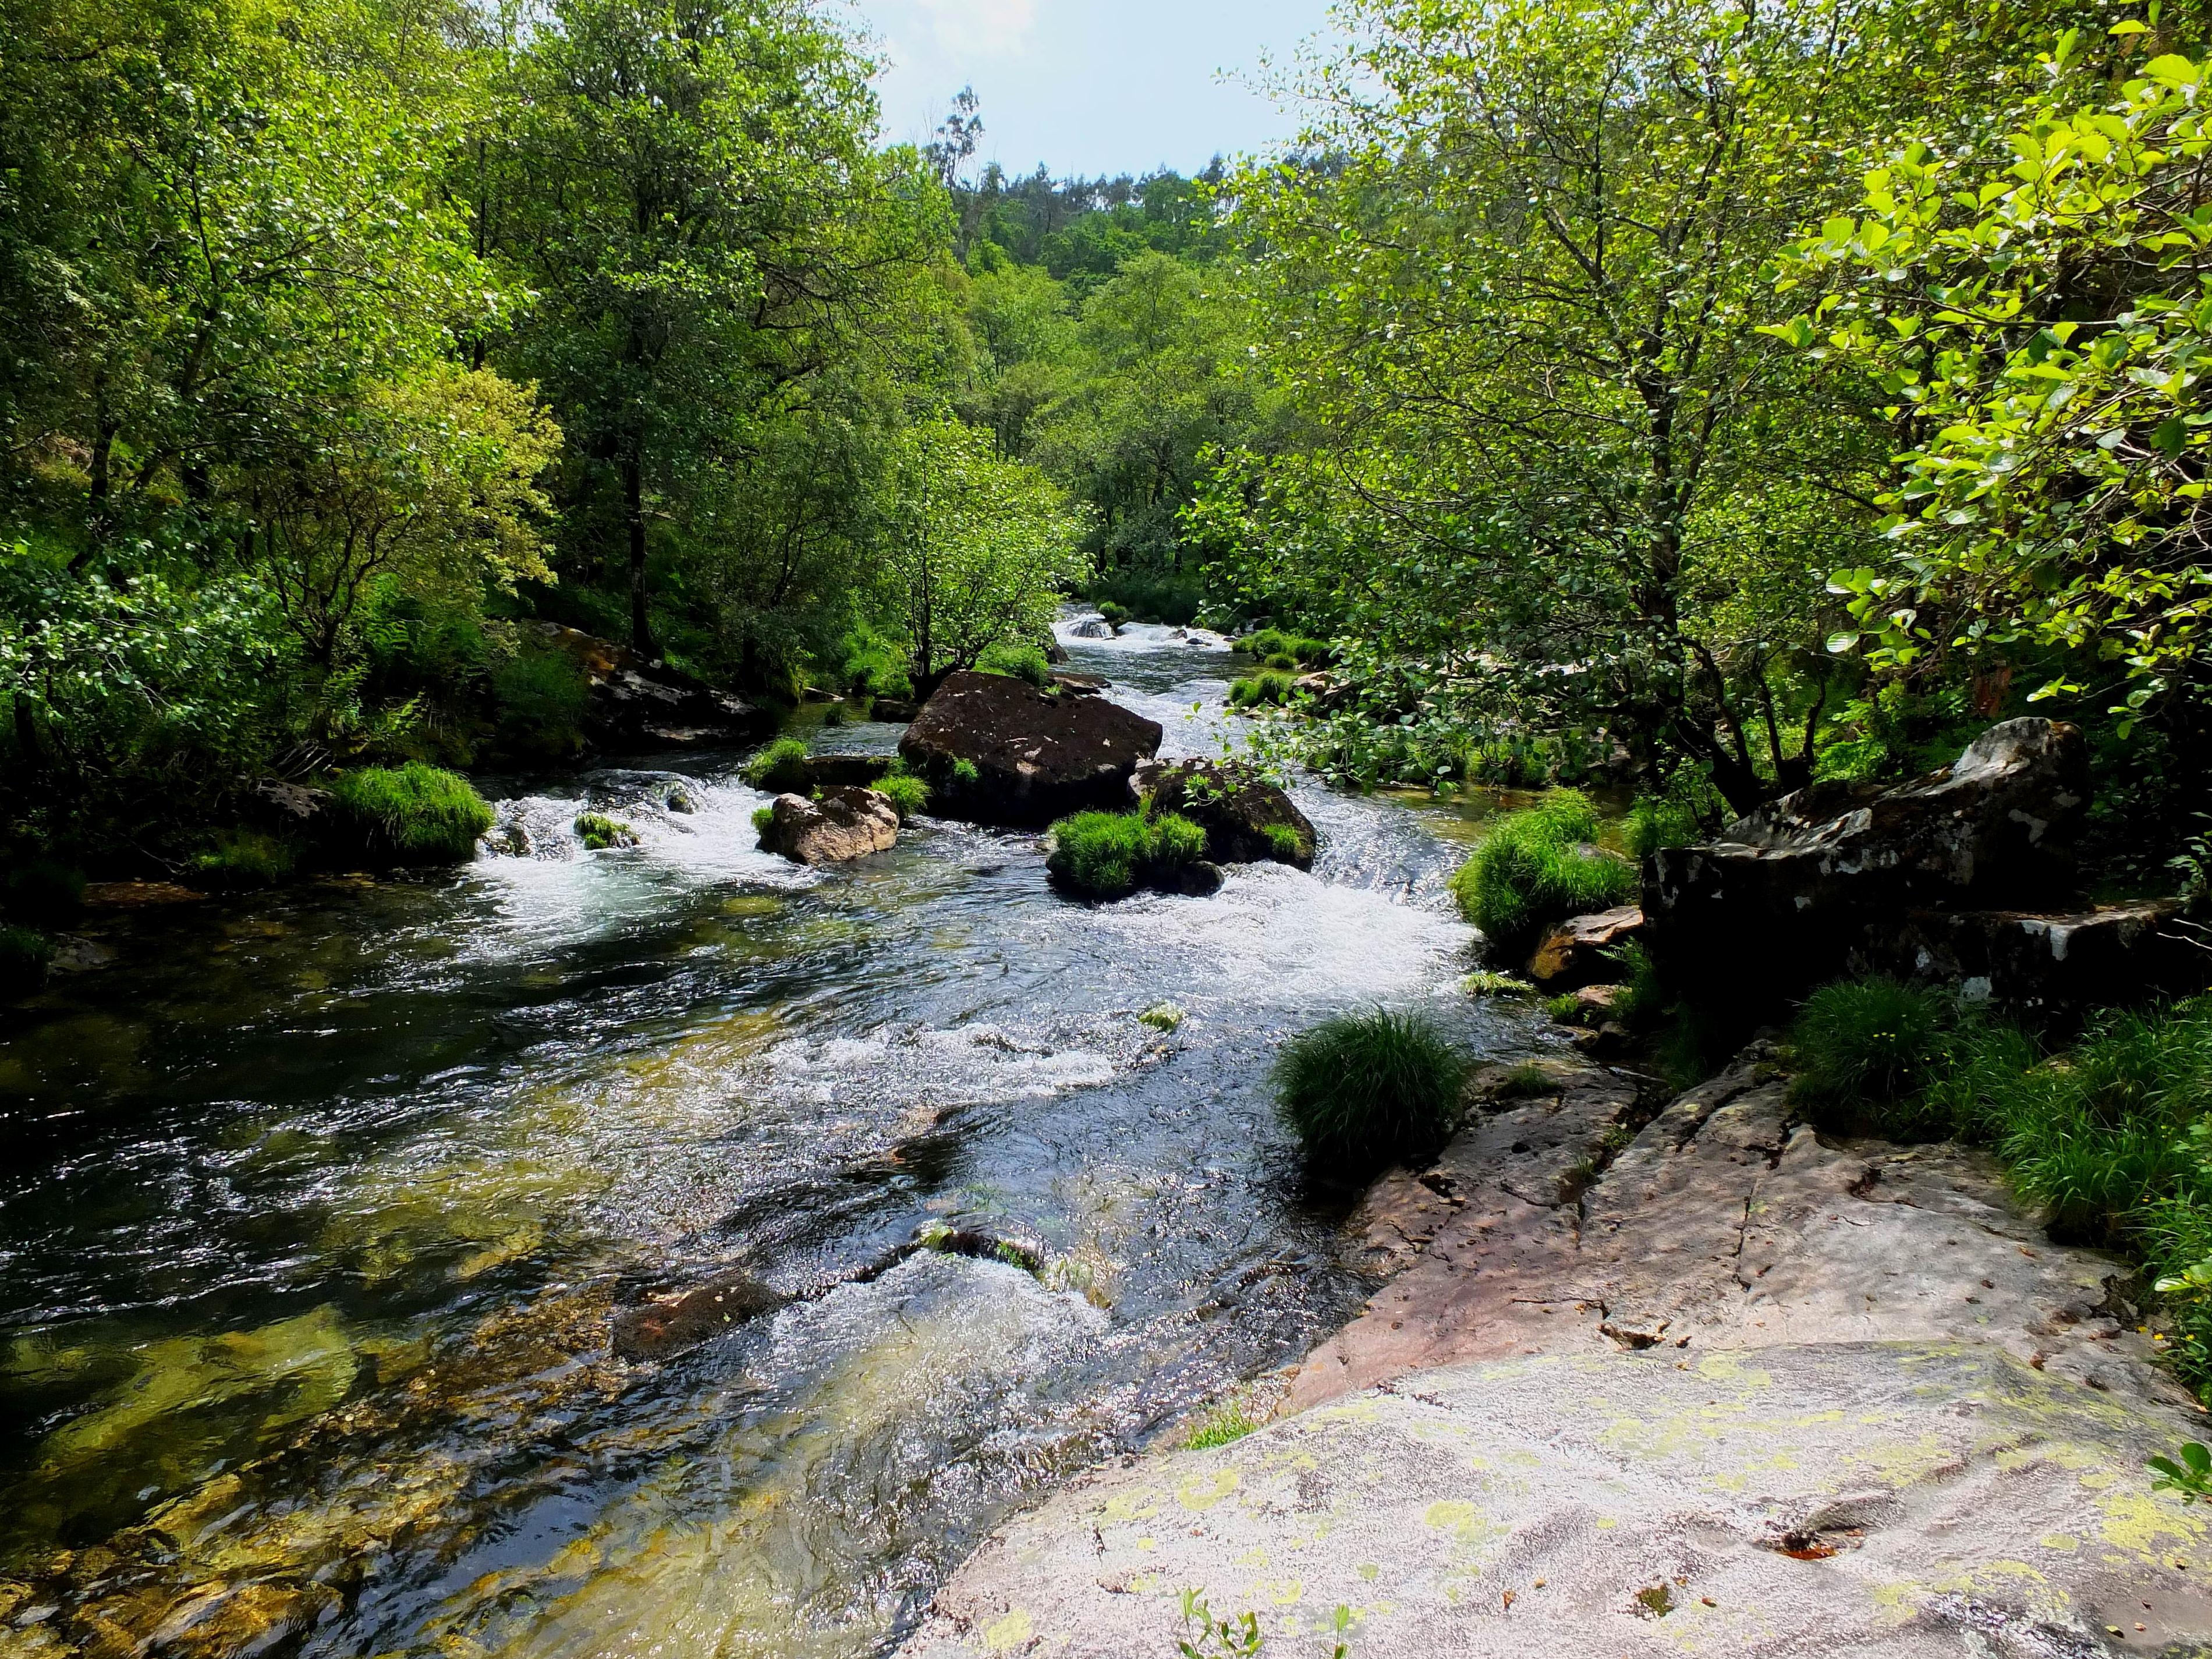 Hình ảnh miễn phí: nước, thiên nhiên, gỗ, sông, phong cảnh, suối, thác